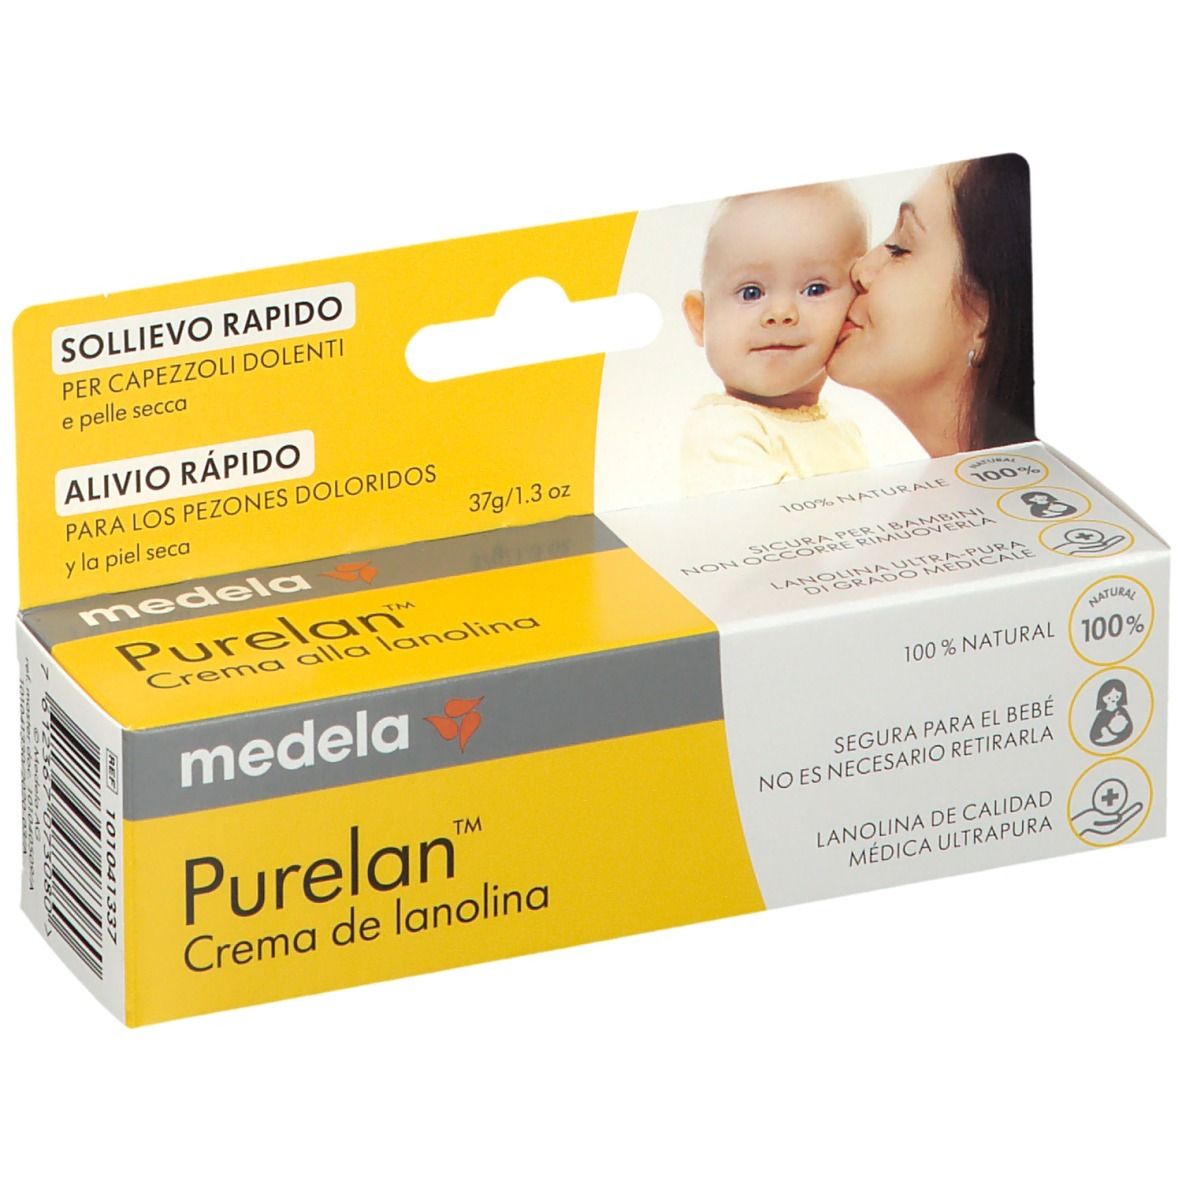 MEDELA ITALIA Srl Medela Purelan™ Lanolin-Creme